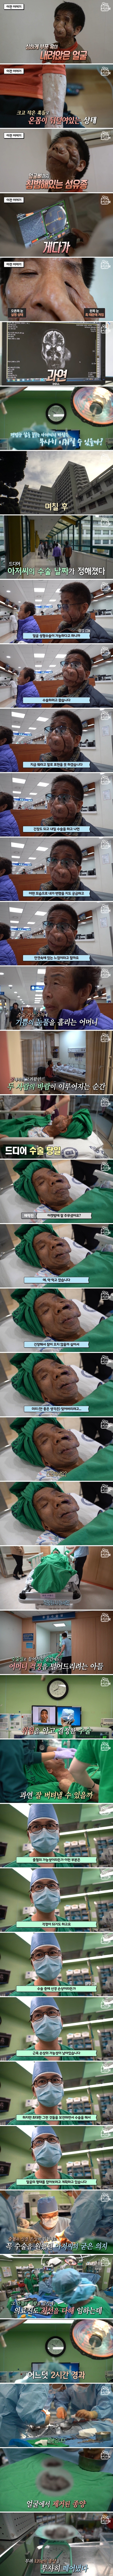 [2부] 얼굴을 뒤덮은 혹, 신경섬유종을 앓고 있는 김진욱 씨의 사연 (1).jpg